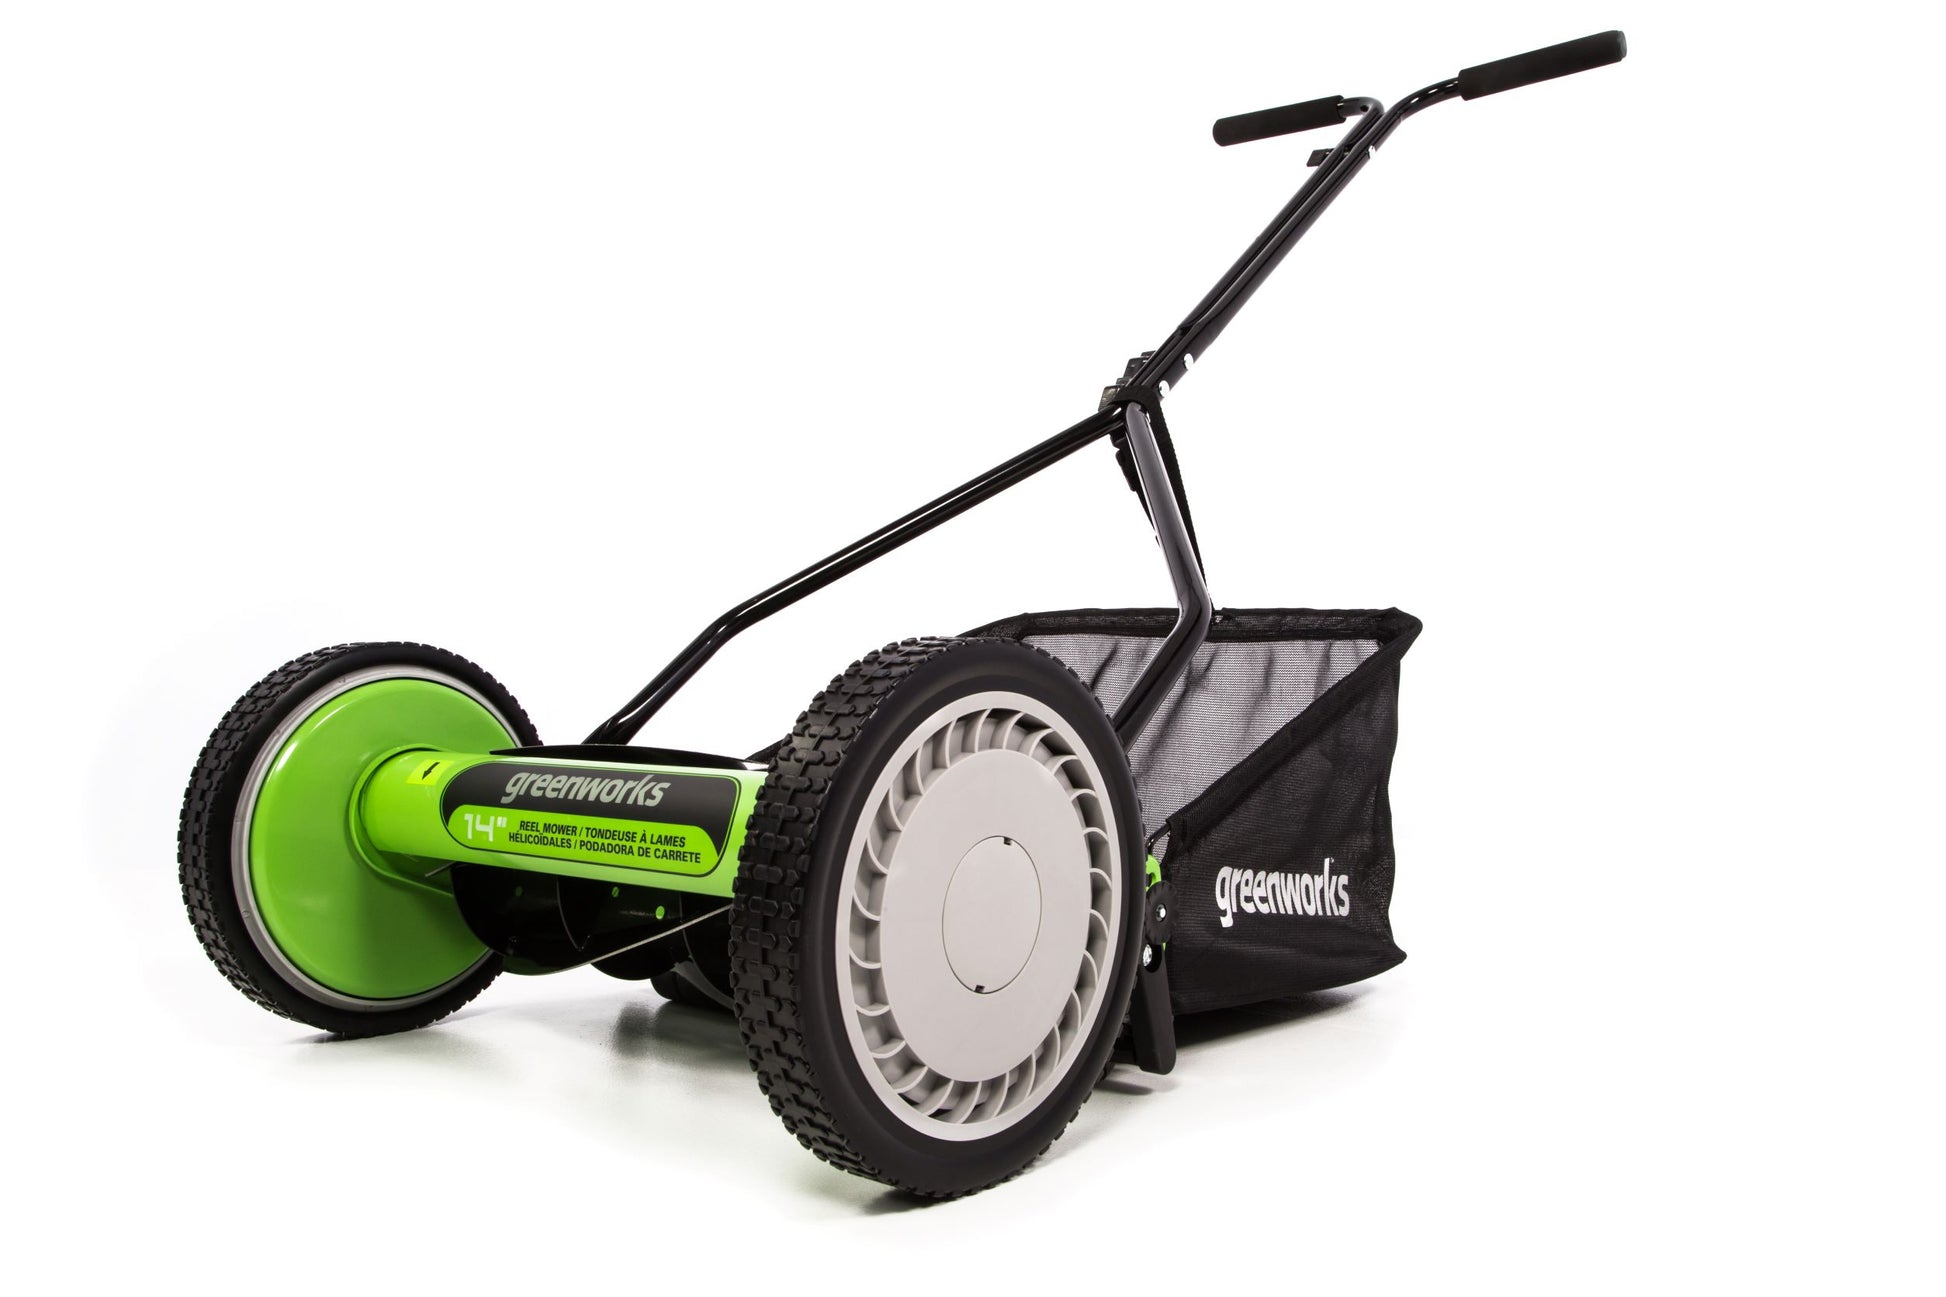 14-Inch Reel Lawn Mower